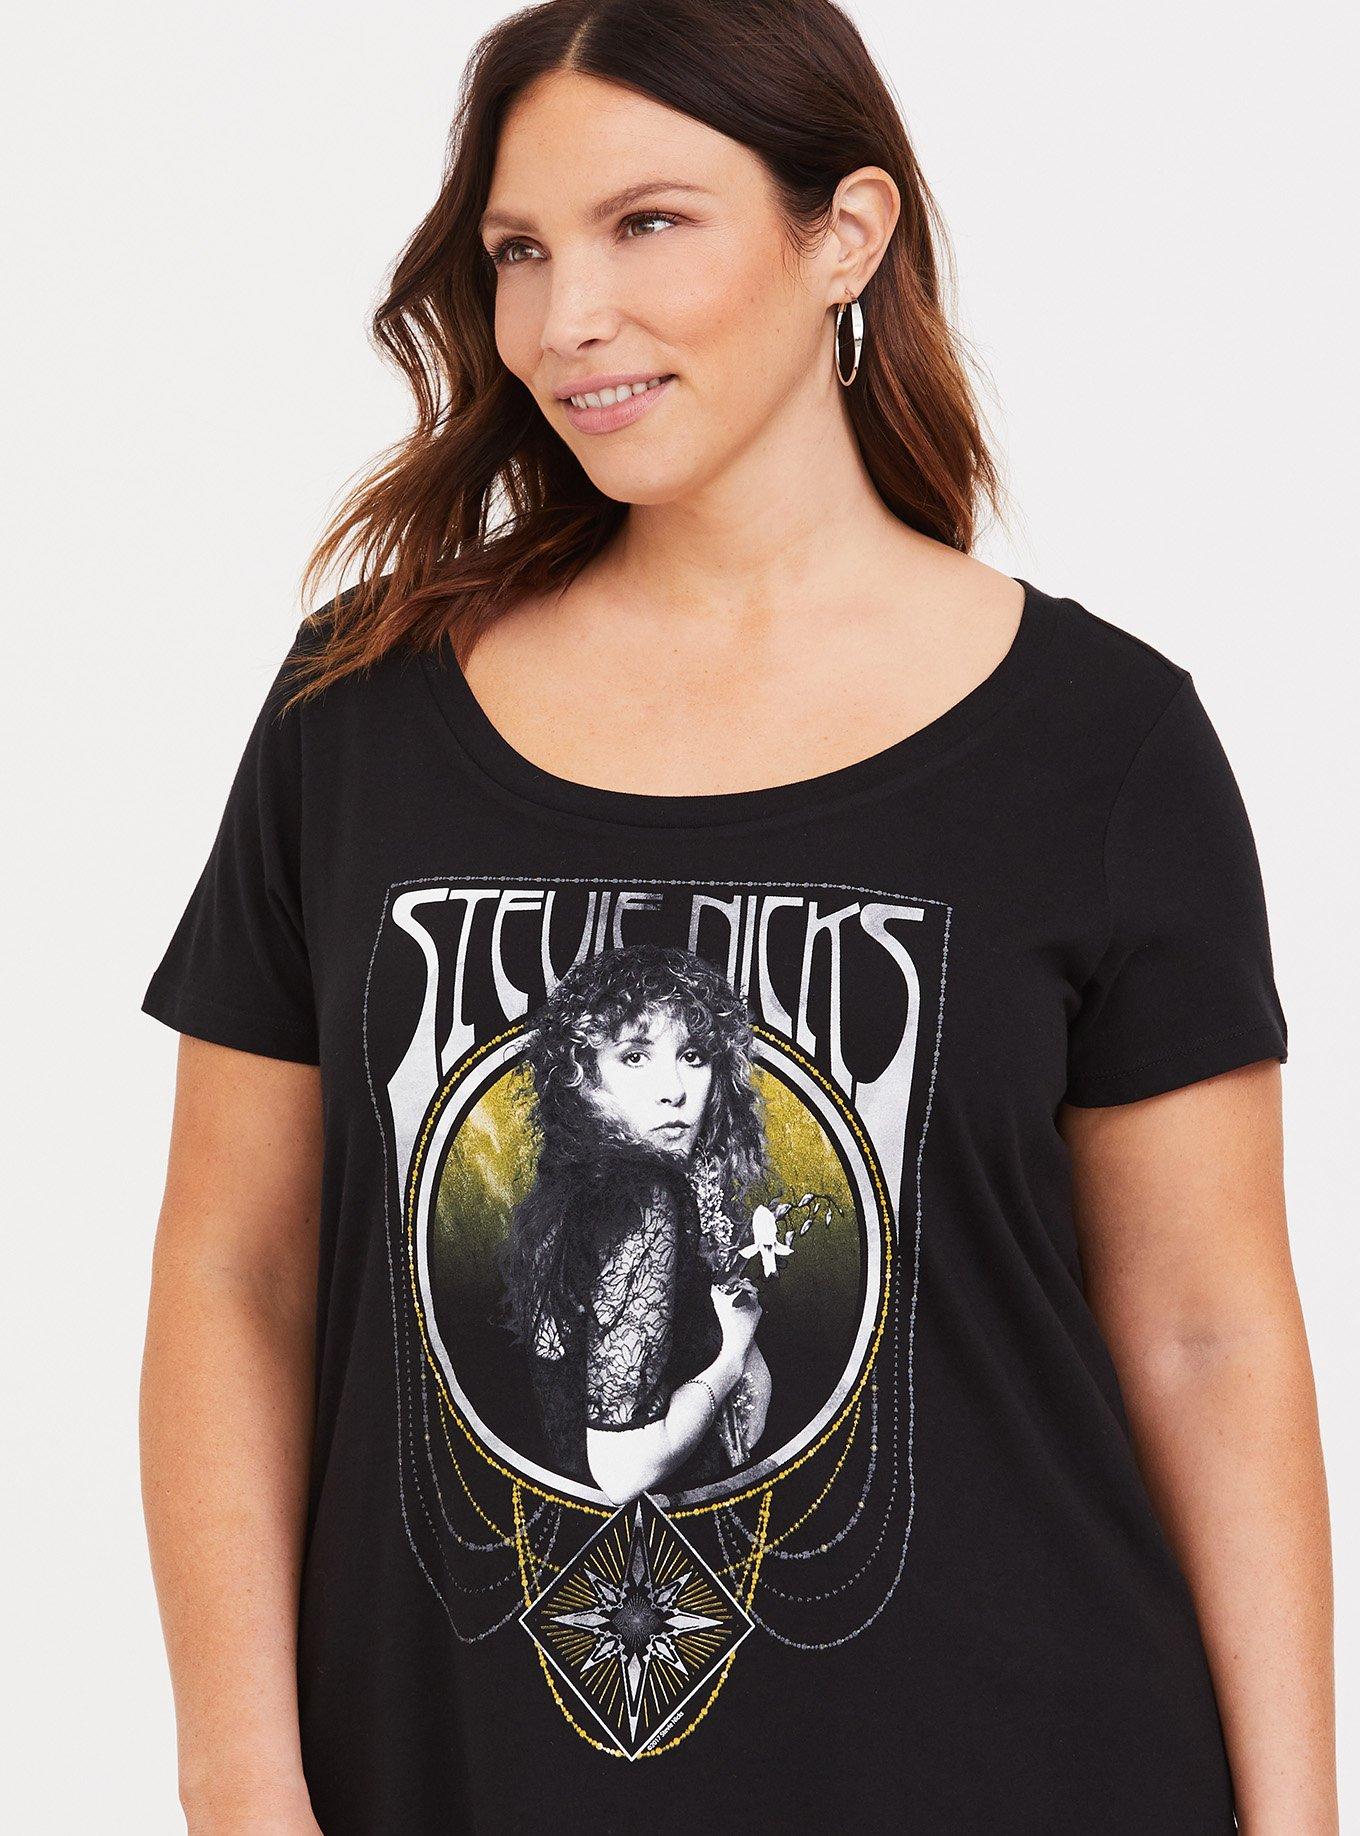 Plus Size - Stevie Nicks Black Slim Fit Tee - Torrid